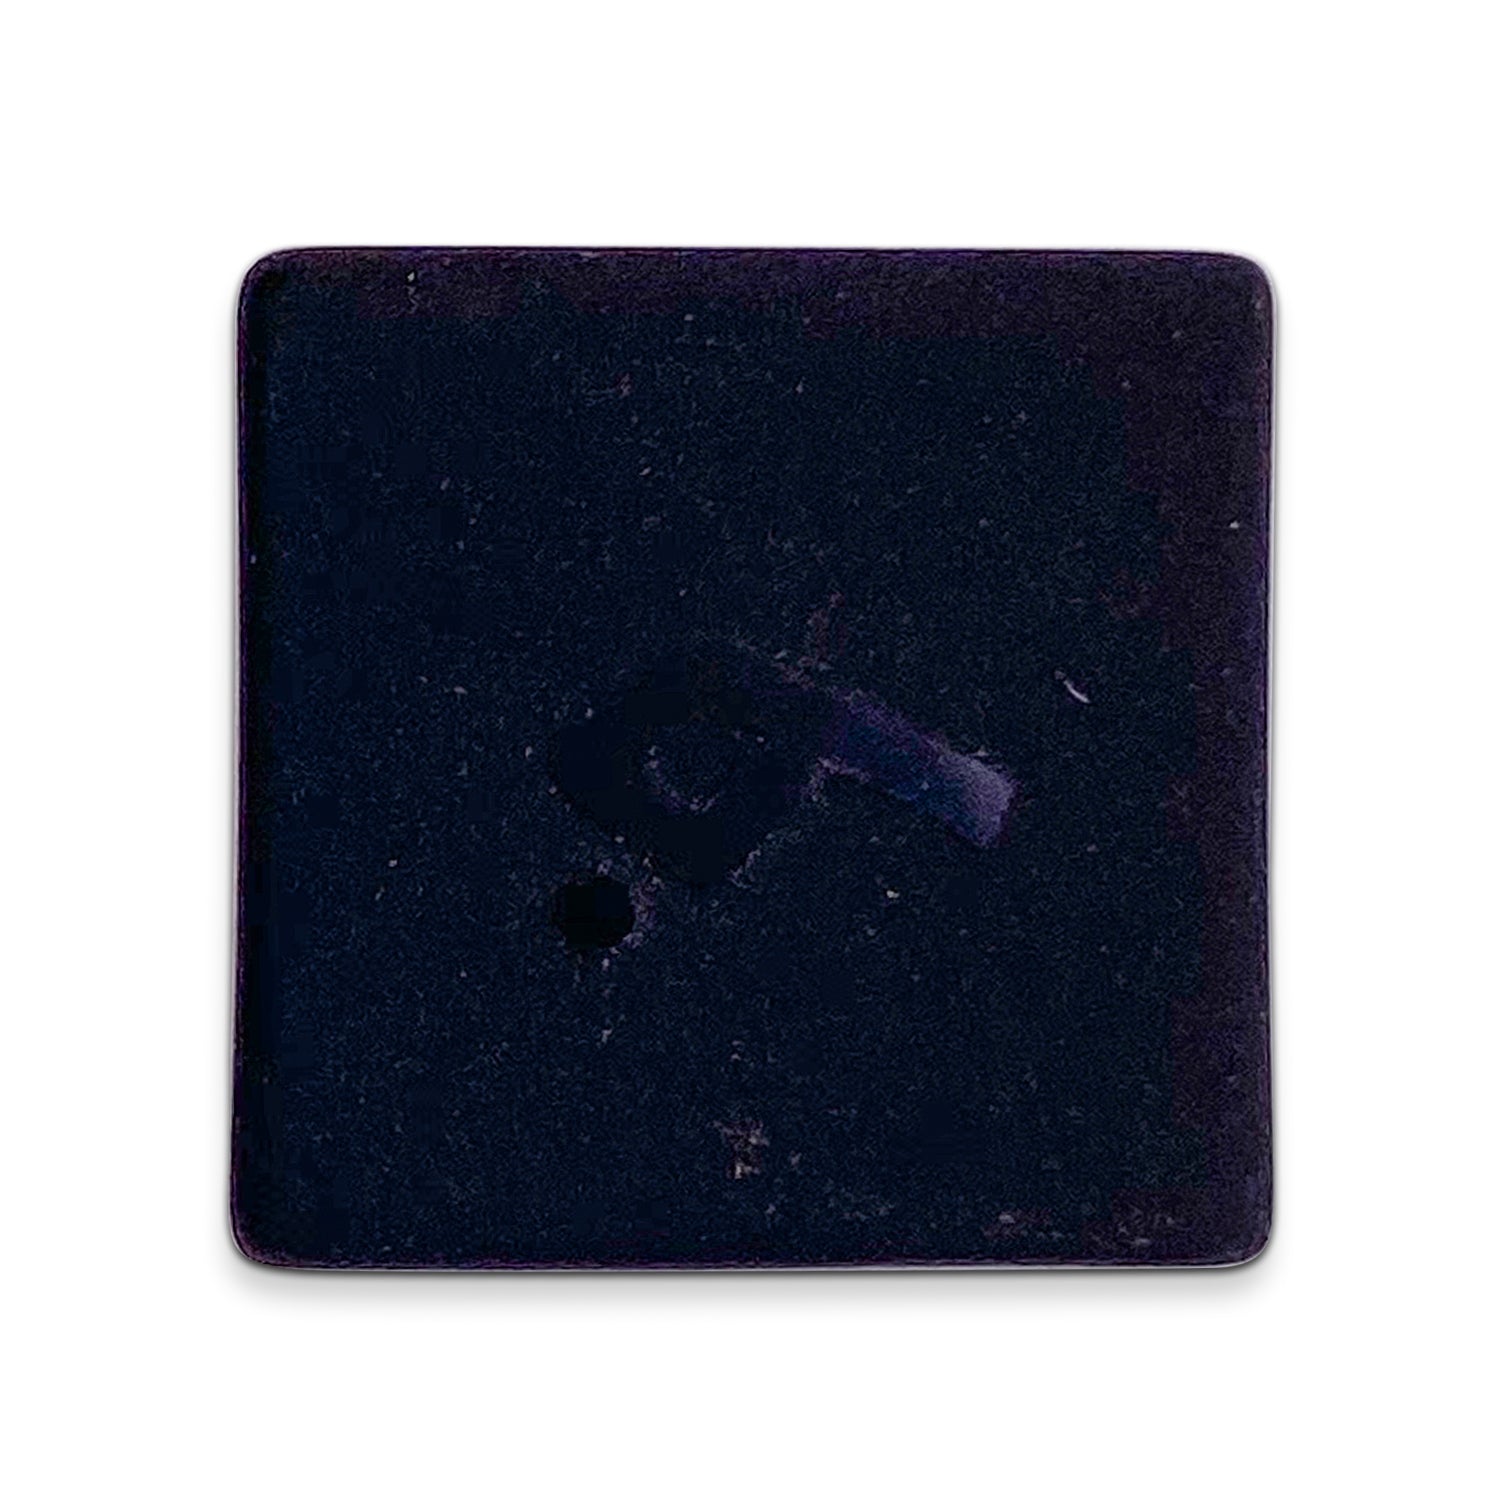 Black Obsidian - Raised Single D6 Gemstone Dice